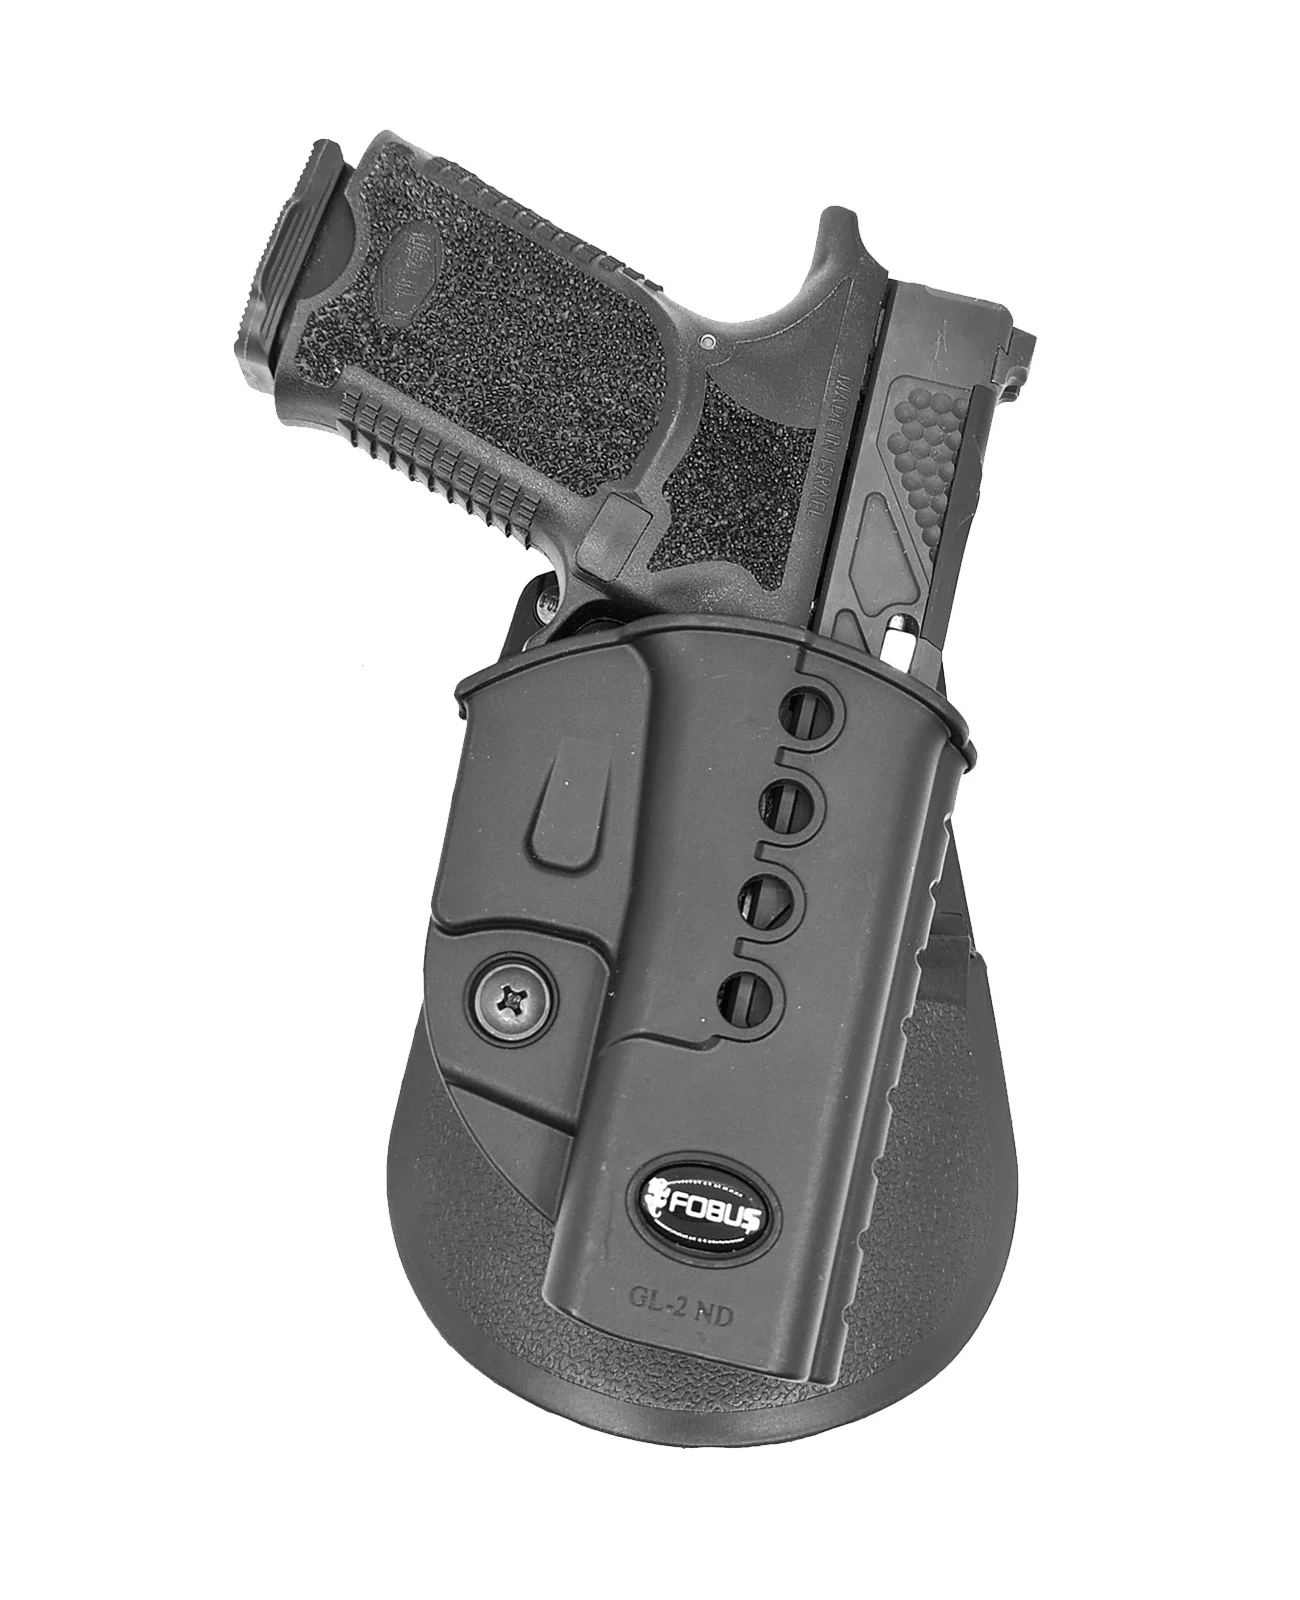 Кобура Fobus для Glock 17/19 с поясным фиксатором GL-2 ND